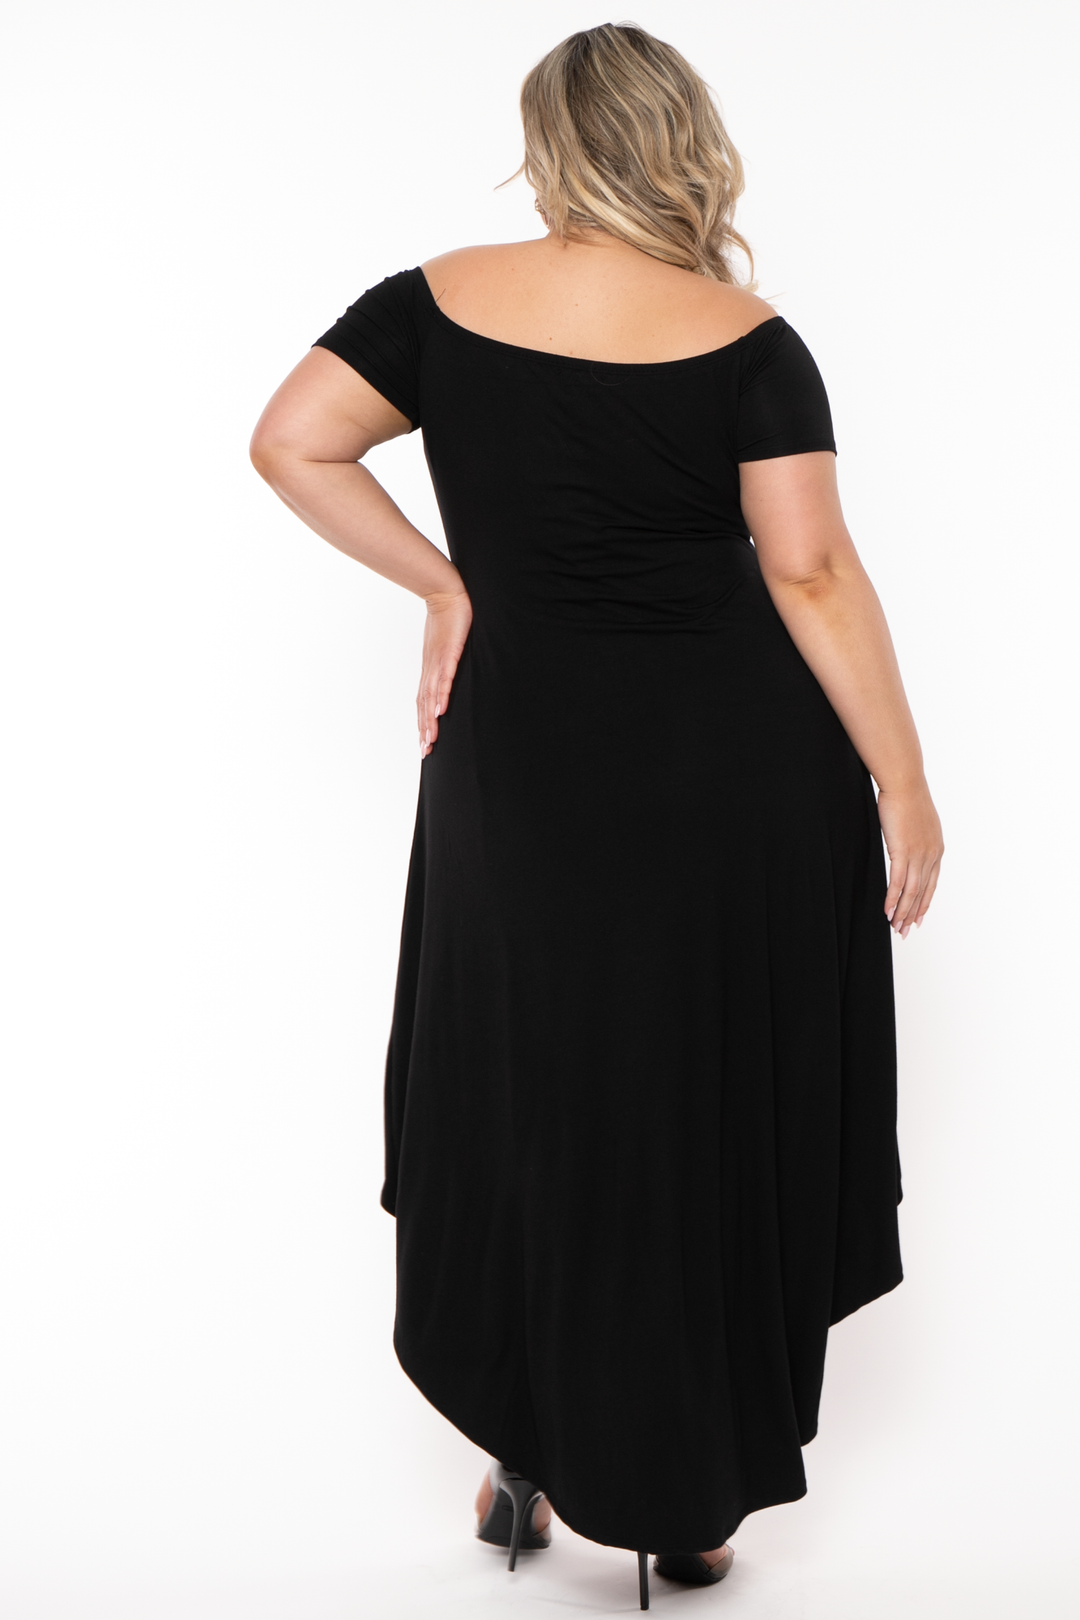 Curvy Sense Dresses Plus Size Carolina Hi-Low Draped Dress - Black